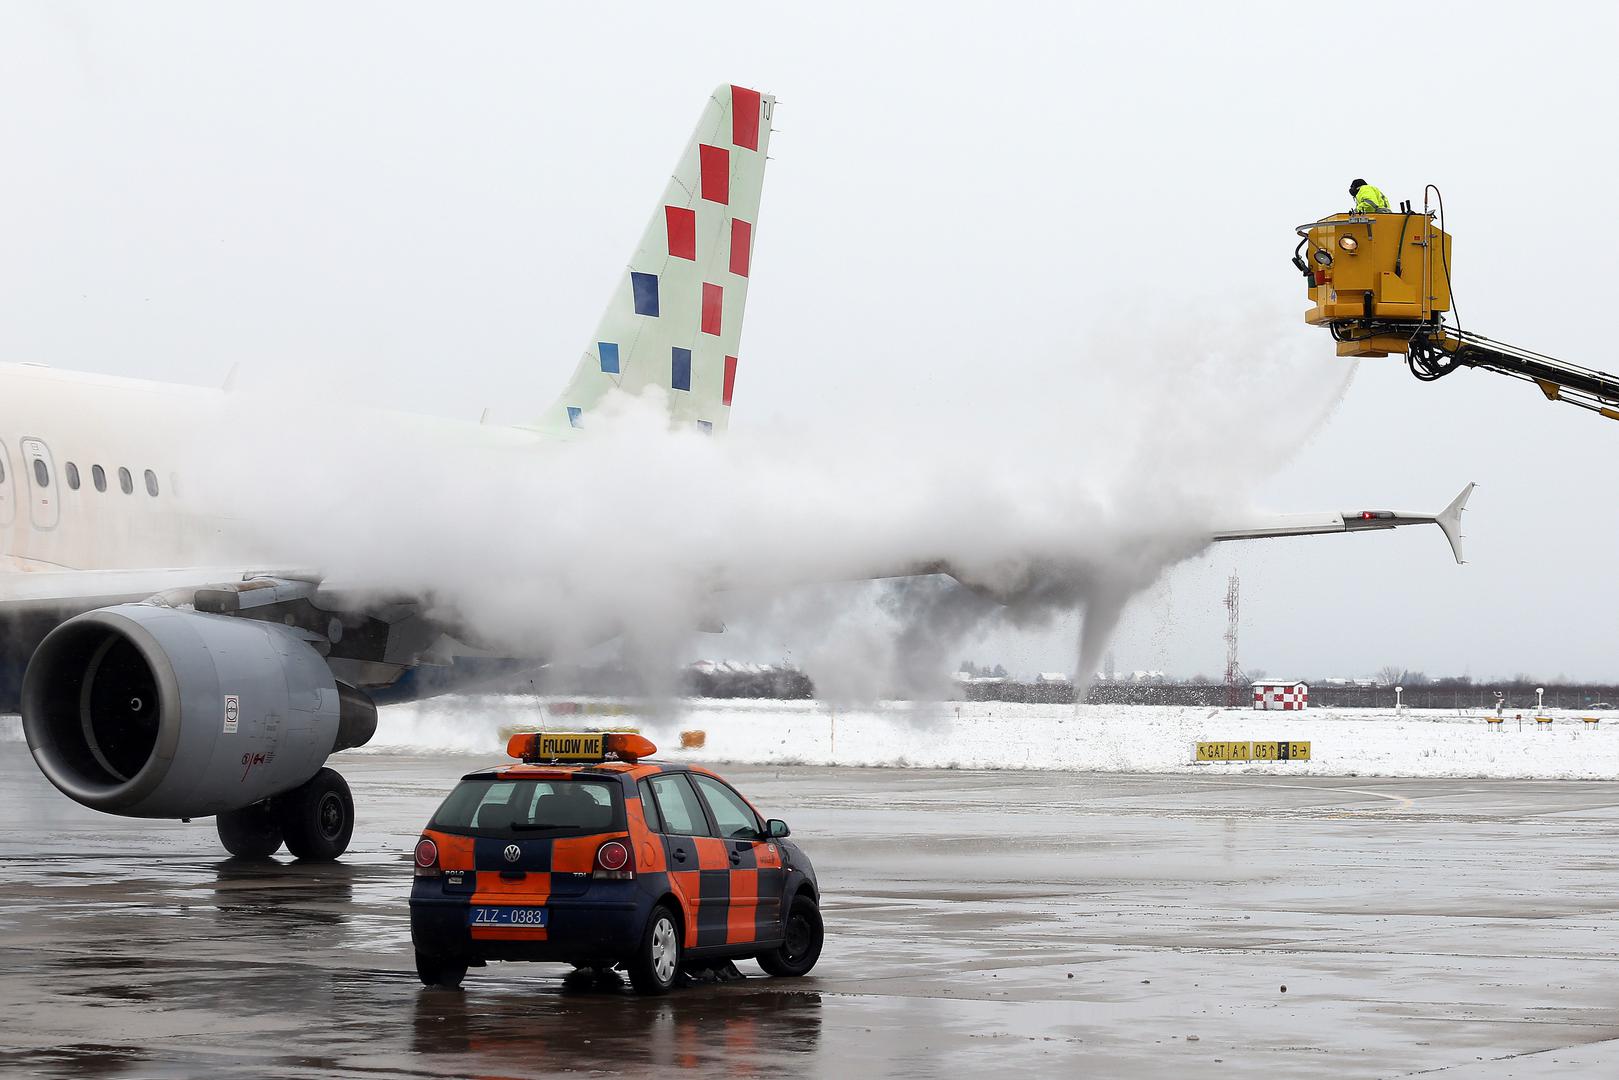  Zbog niskih temperatura i snijega radnici Zračne luke Franje Tuđmana prskaju zrakoplove tekućinama za odleđivanje i zaštitu od nastanka leda.